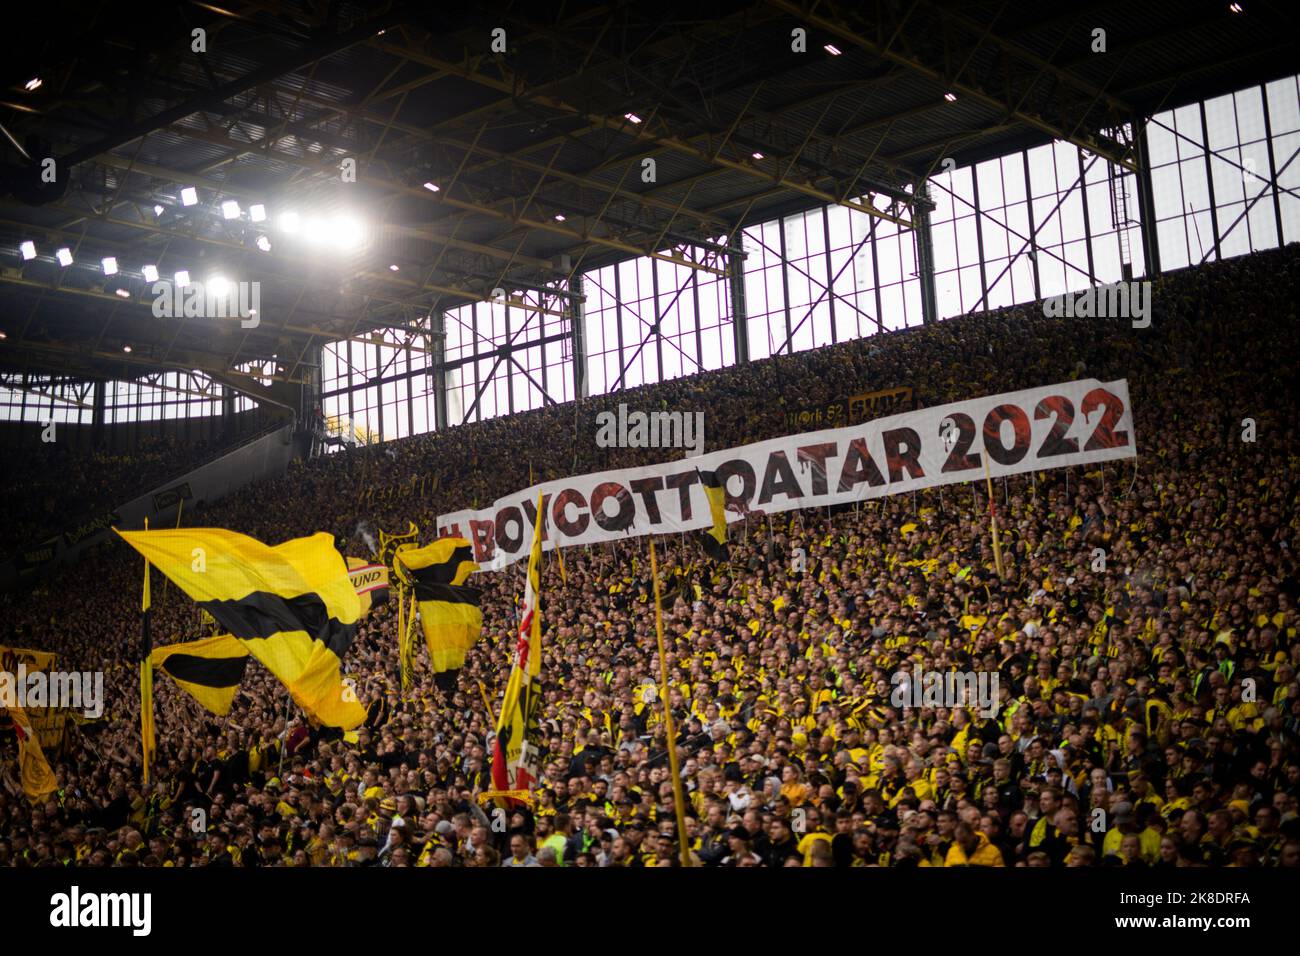 Dortmund, 22.10.2022 BVB Fans fordern den Boykott der Fussball Weltmeisterschaft in Katar. Plakat:  Boycott von Qatar 2022 Borussia Dortmund - VfB Stu Stock Photo